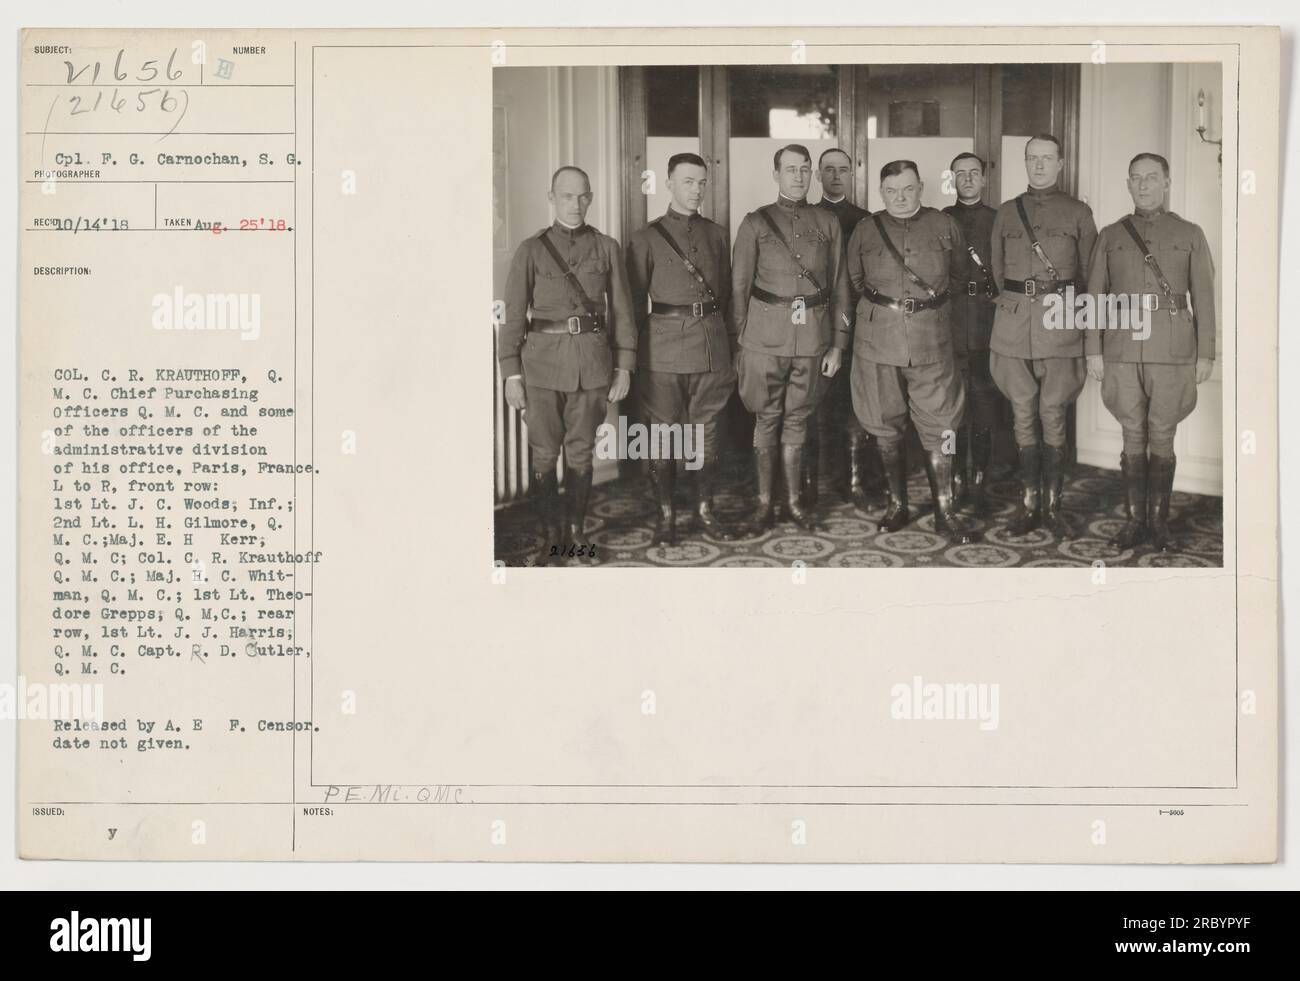 Colonel C. R. Krauthoff, Chief Purchasing Officer des Quartermaster Corps, wird mit Beamten der Verwaltungsabteilung seines Büros in Paris, Frankreich, abgebildet. Vordere Reihe, L bis R: 1. LT. J. C. Woods; 2. LT. L. H. Gilmore; Maj. E. H. Kerr; Oberst C. R. Krauthoff; Maj. H. C. Whitman; 1. LT. Theodore Grepps; hintere Reihe, LT. J. J. Harris; Capt. R. D. Cutler. Foto veröffentlicht von A.E.F. Zensor. Datum nicht angegeben. Herausgegeben von PE.ML.QMC. Hinweise nicht angegeben. Stockfoto